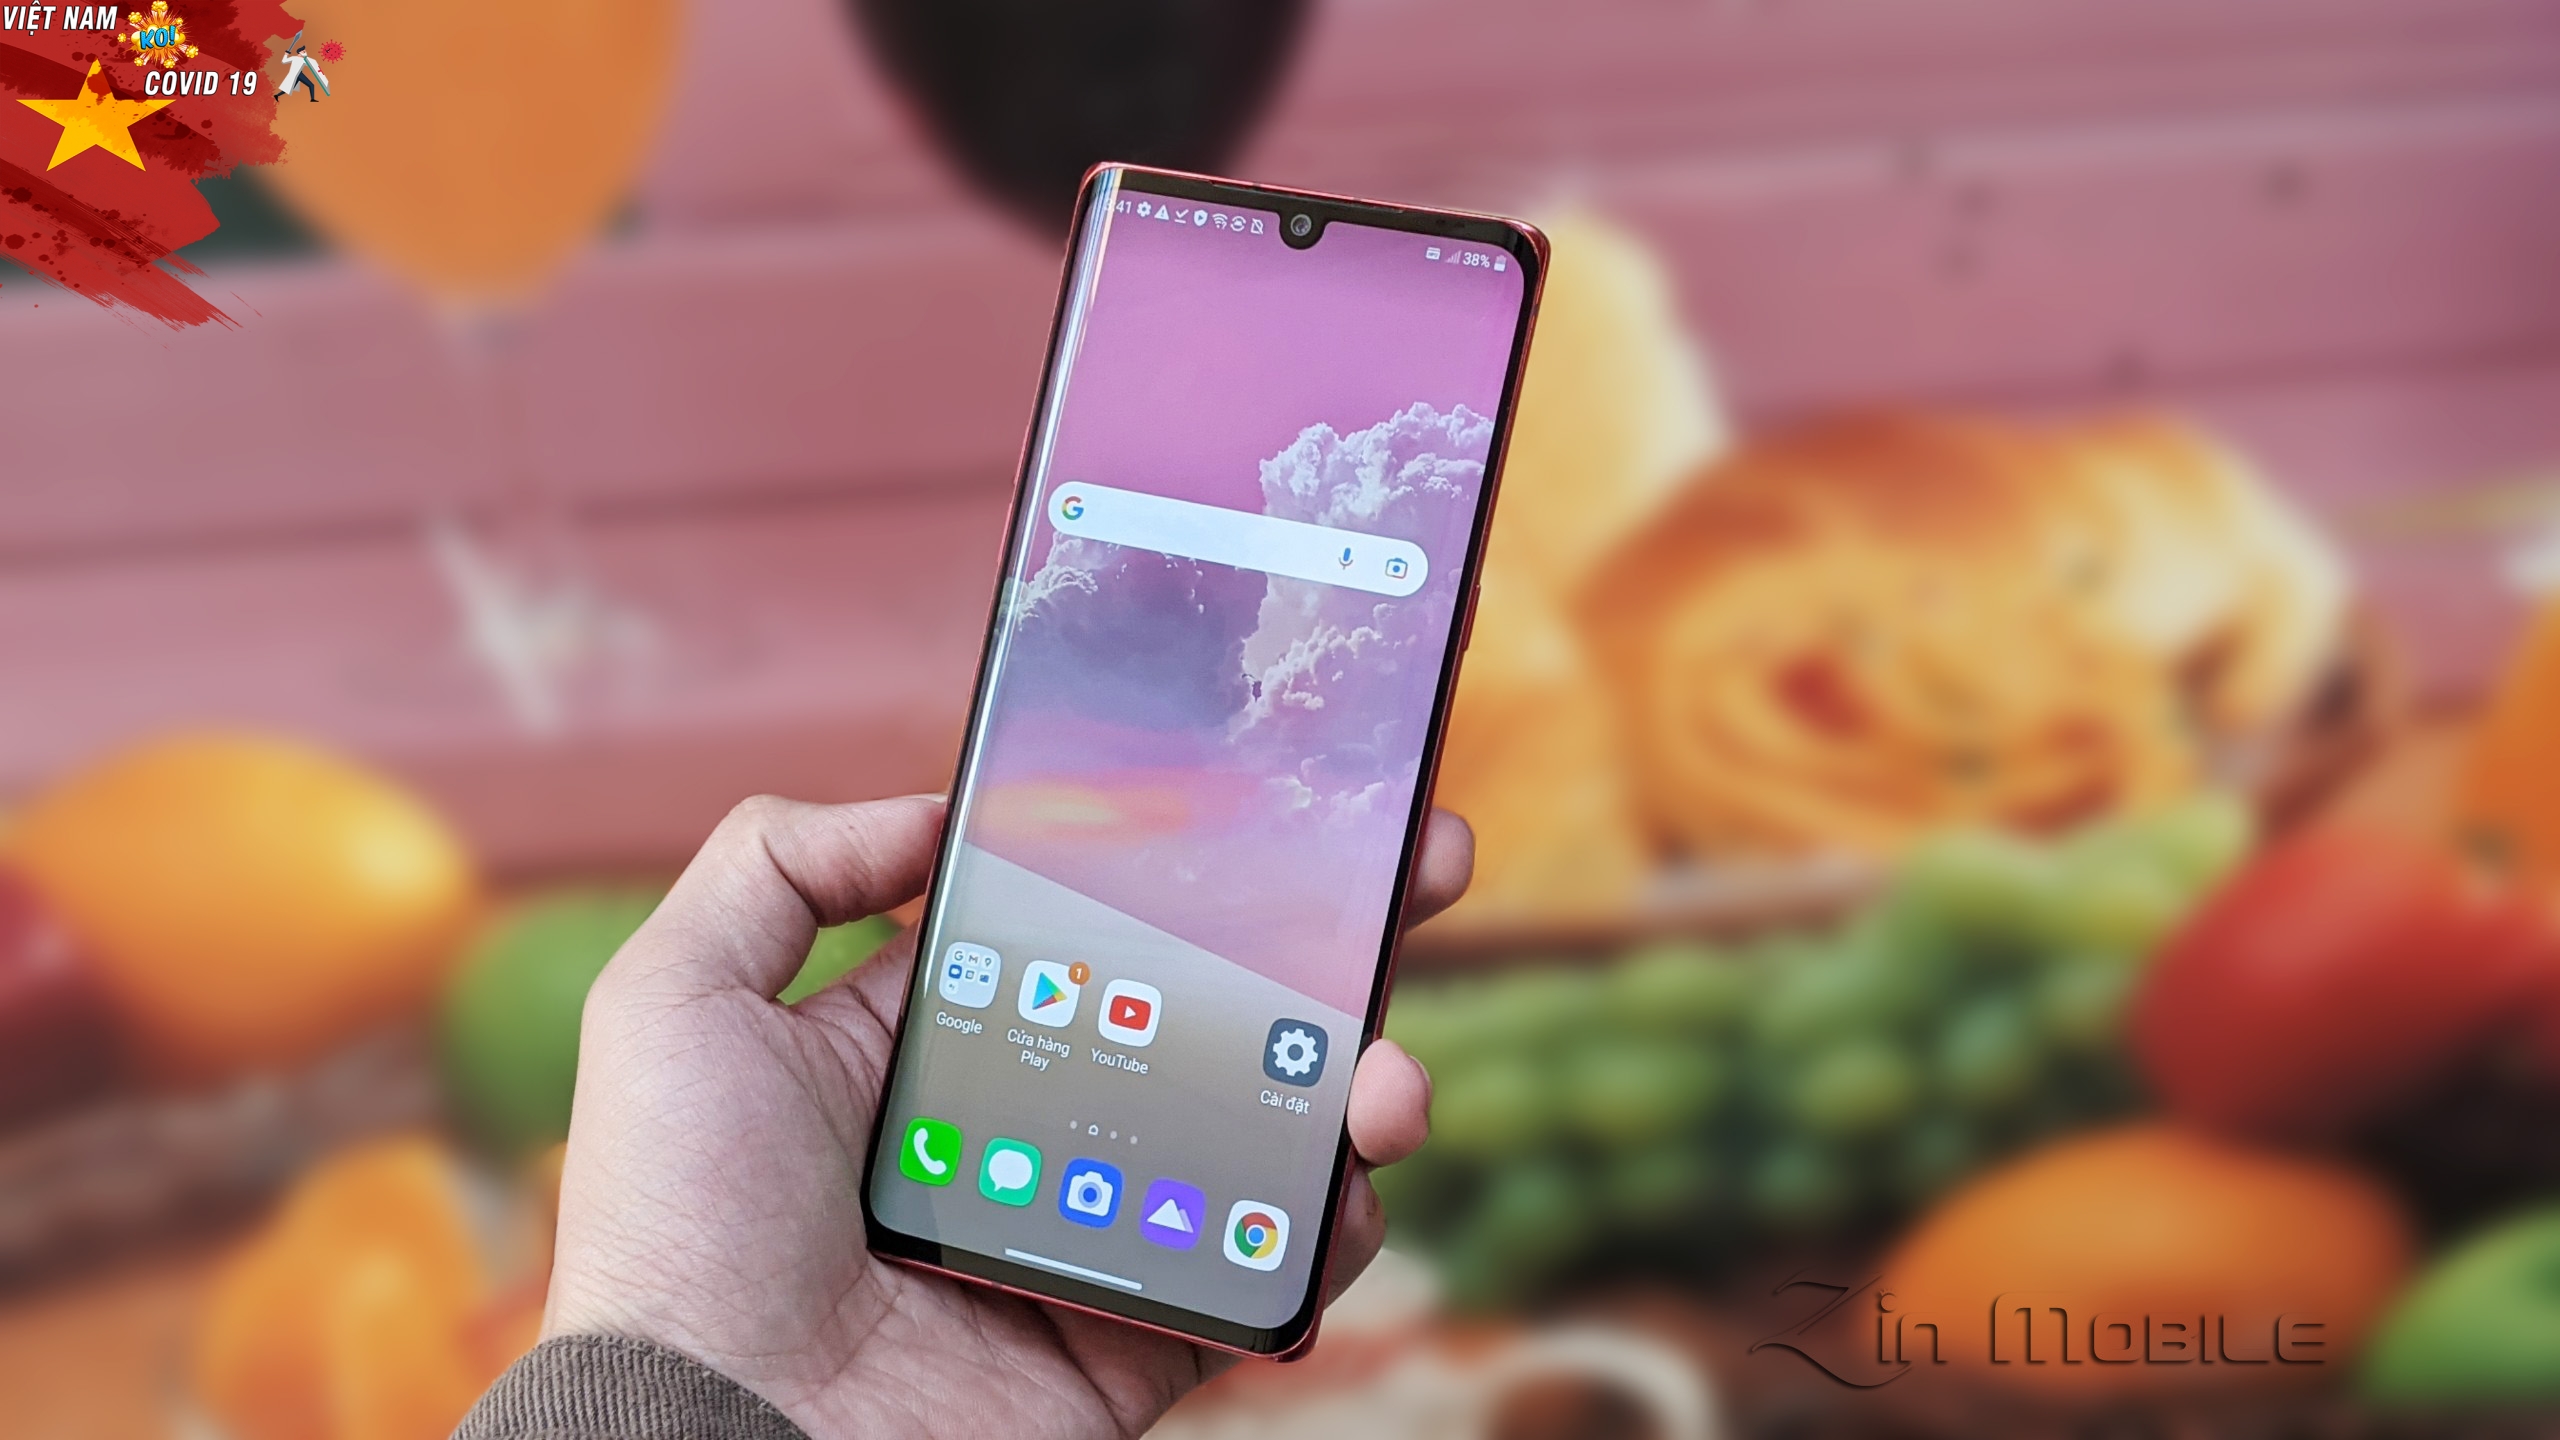 Với thiết kế đẹp và chất lượng cao, điện thoại LG Velvet 5G sẽ mang đến trải nghiệm tuyệt vời cho bạn. Tận hưởng tốc độ kết nối 5G, trải nghiệm đầy màu sắc trên màn hình đẹp và sắc nét của điện thoại này. Click ngay để chiêm ngưỡng hình ảnh đầy ấn tượng của LG Velvet 5G!